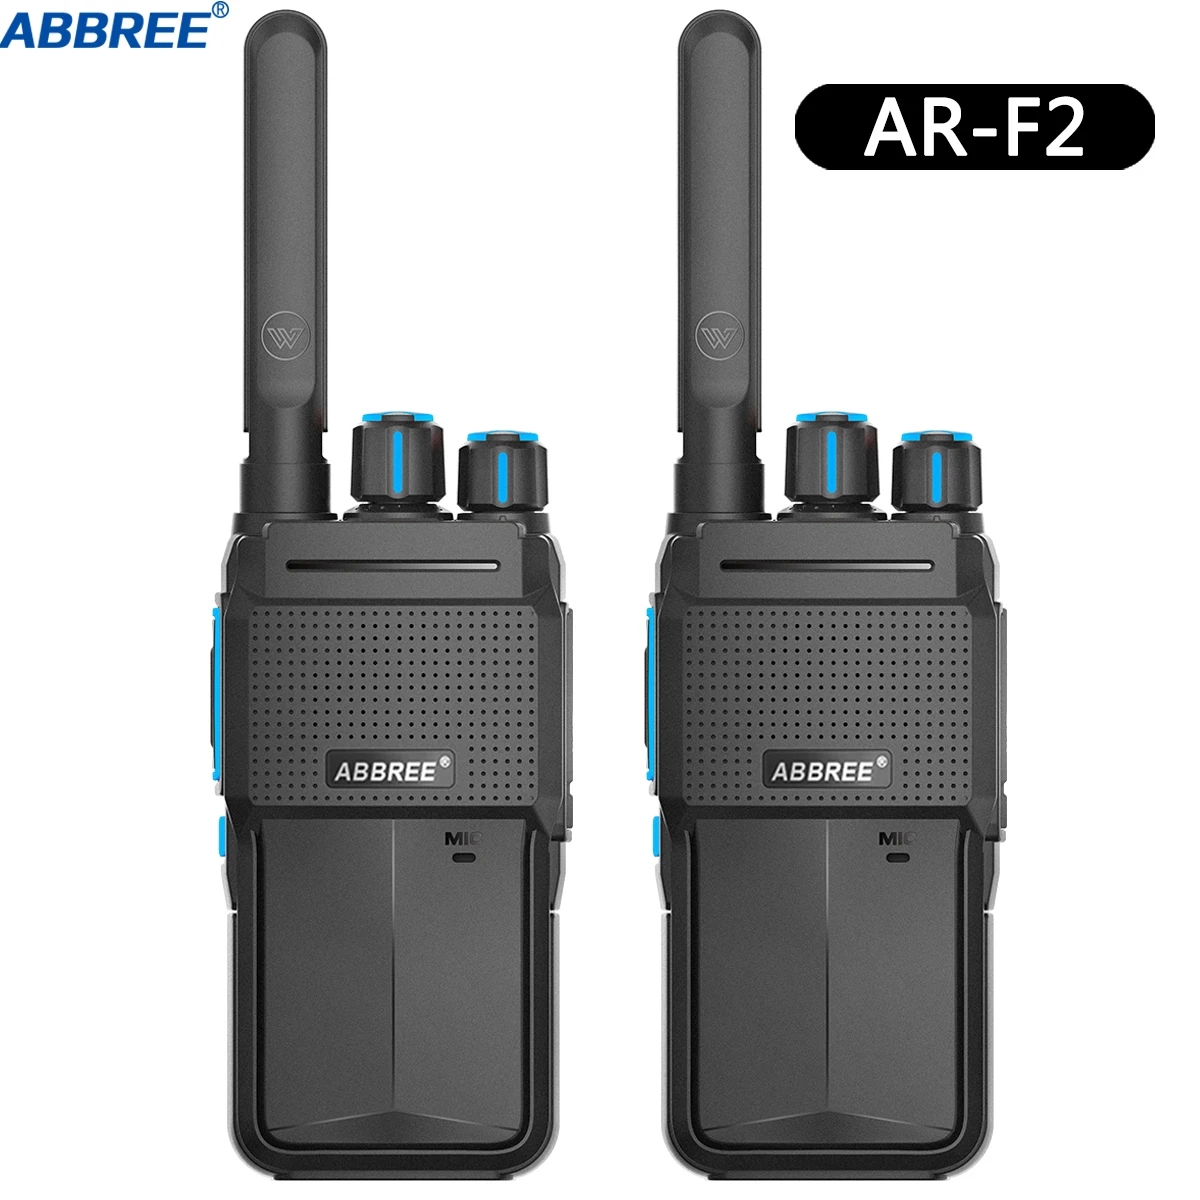 2 шт. ABBREE AR-F2 мини-рация Портативная радиостанция двухстороннее радио uhf band 400-480 МГц HF трансивер BF-888S UV-5R